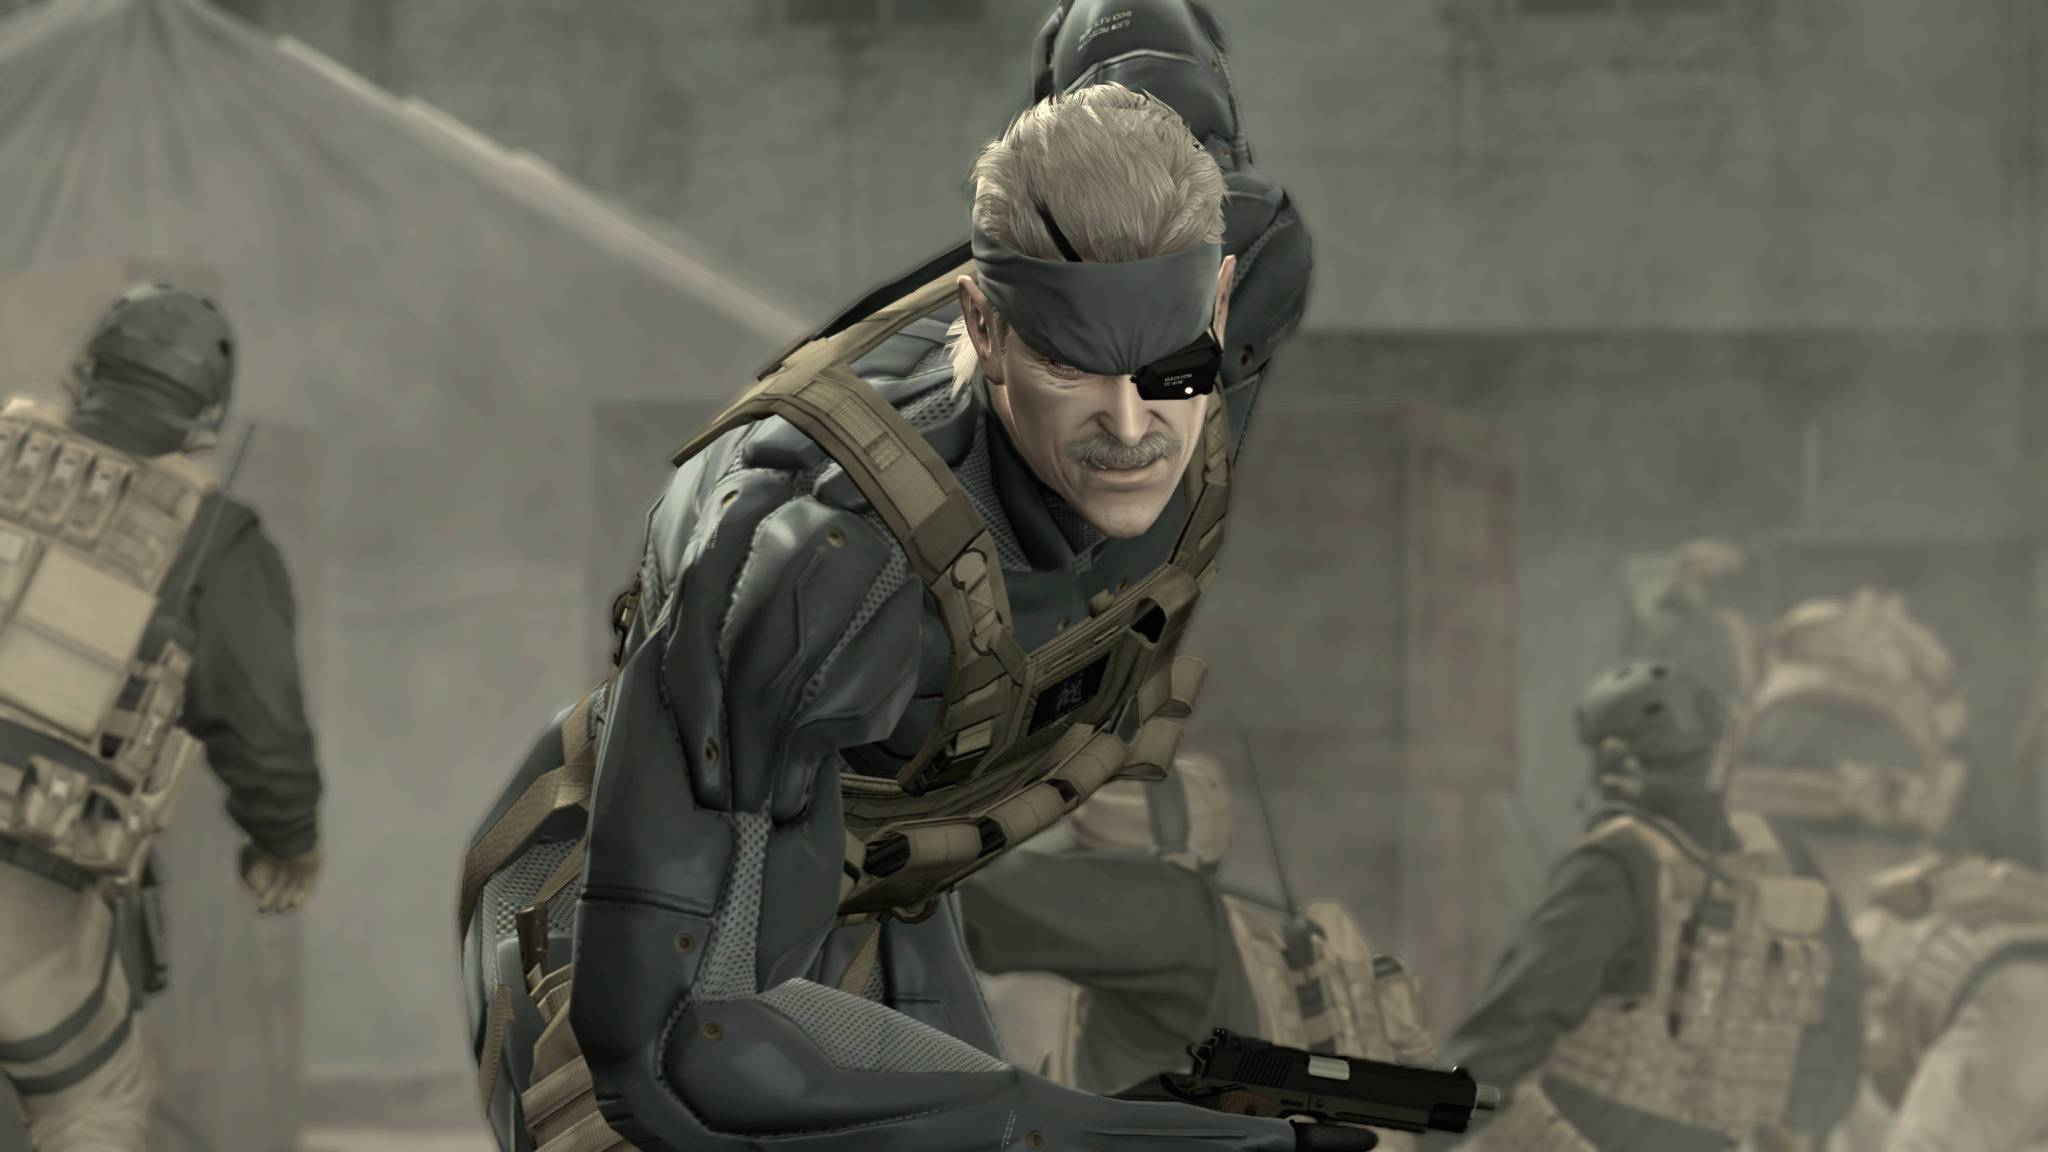 Metal Gear Solid 4 RPCS 3 Emulator Fixes Visuals